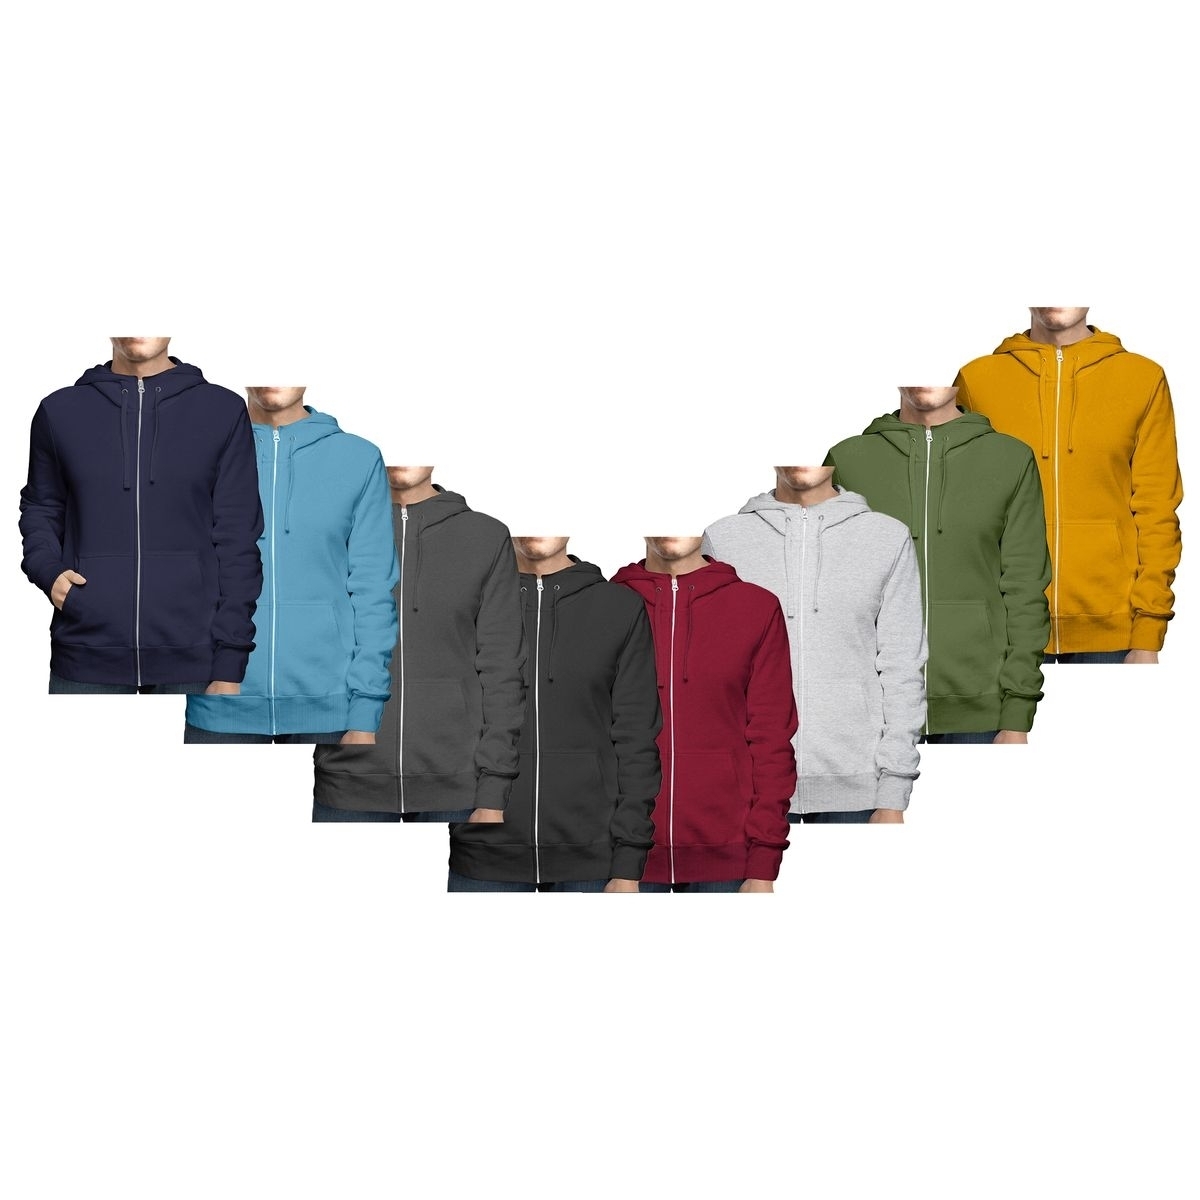 Men's Big & Tall Winter Warm Soft Cozy Full Zip-Up Fleece Lined Hoodie Sweatshirt - Red, Small